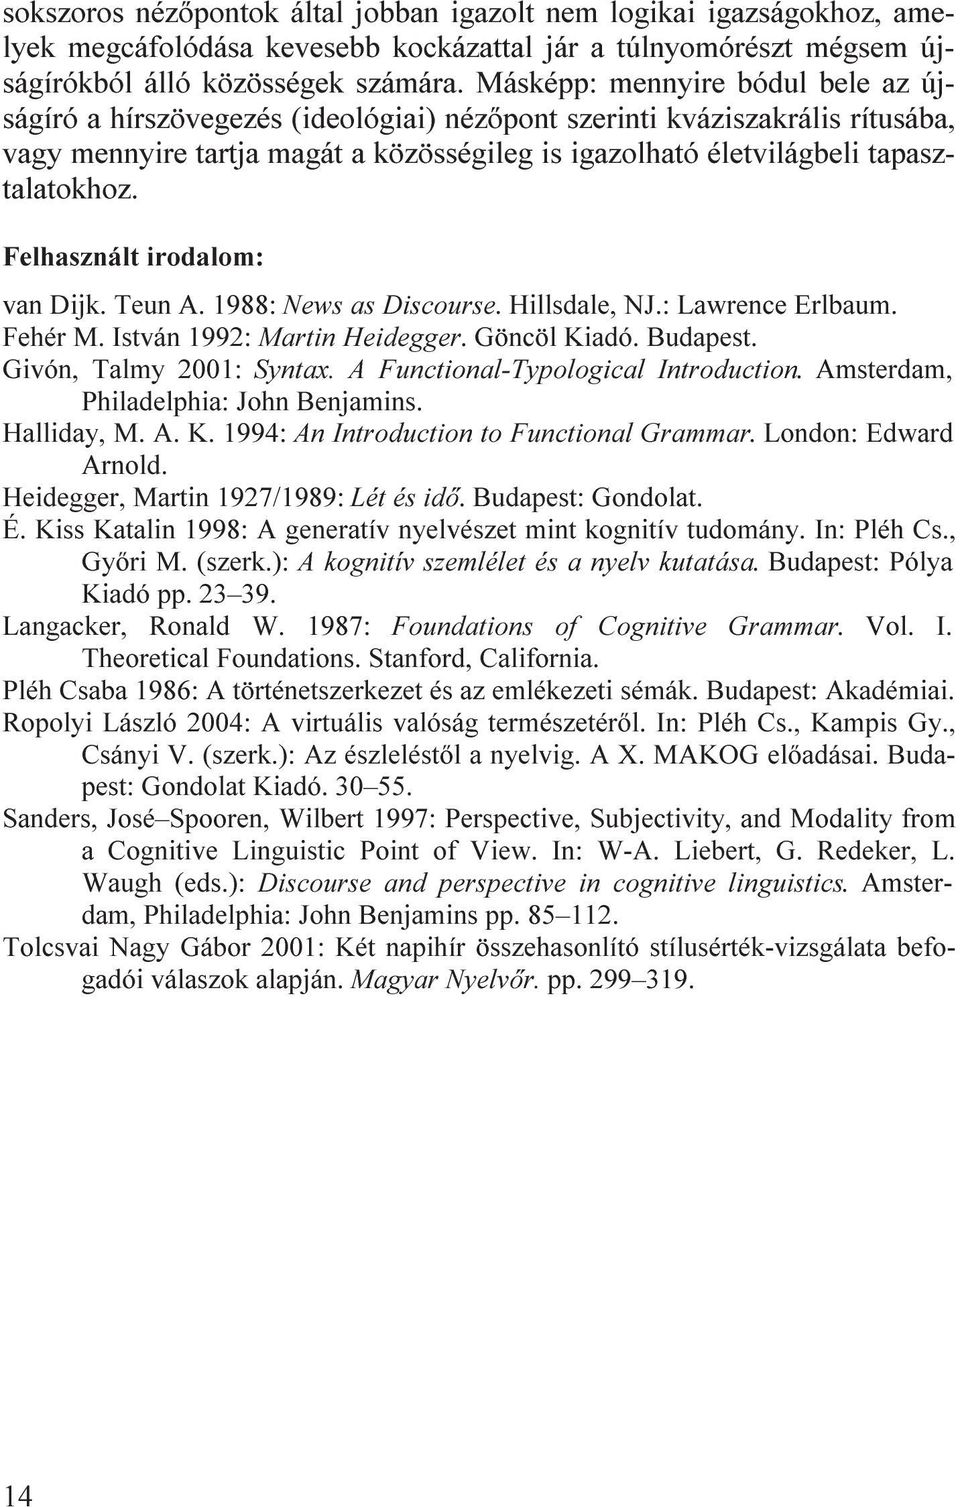 Felhasznált irodalom: van Dijk. Teun A. 1988: News as Discourse. Hillsdale, NJ.: Lawrence Erlbaum. Fehér M. István 1992: Martin Heidegger. Göncöl Kiadó. Budapest. Givón, Talmy 2001: Syntax.